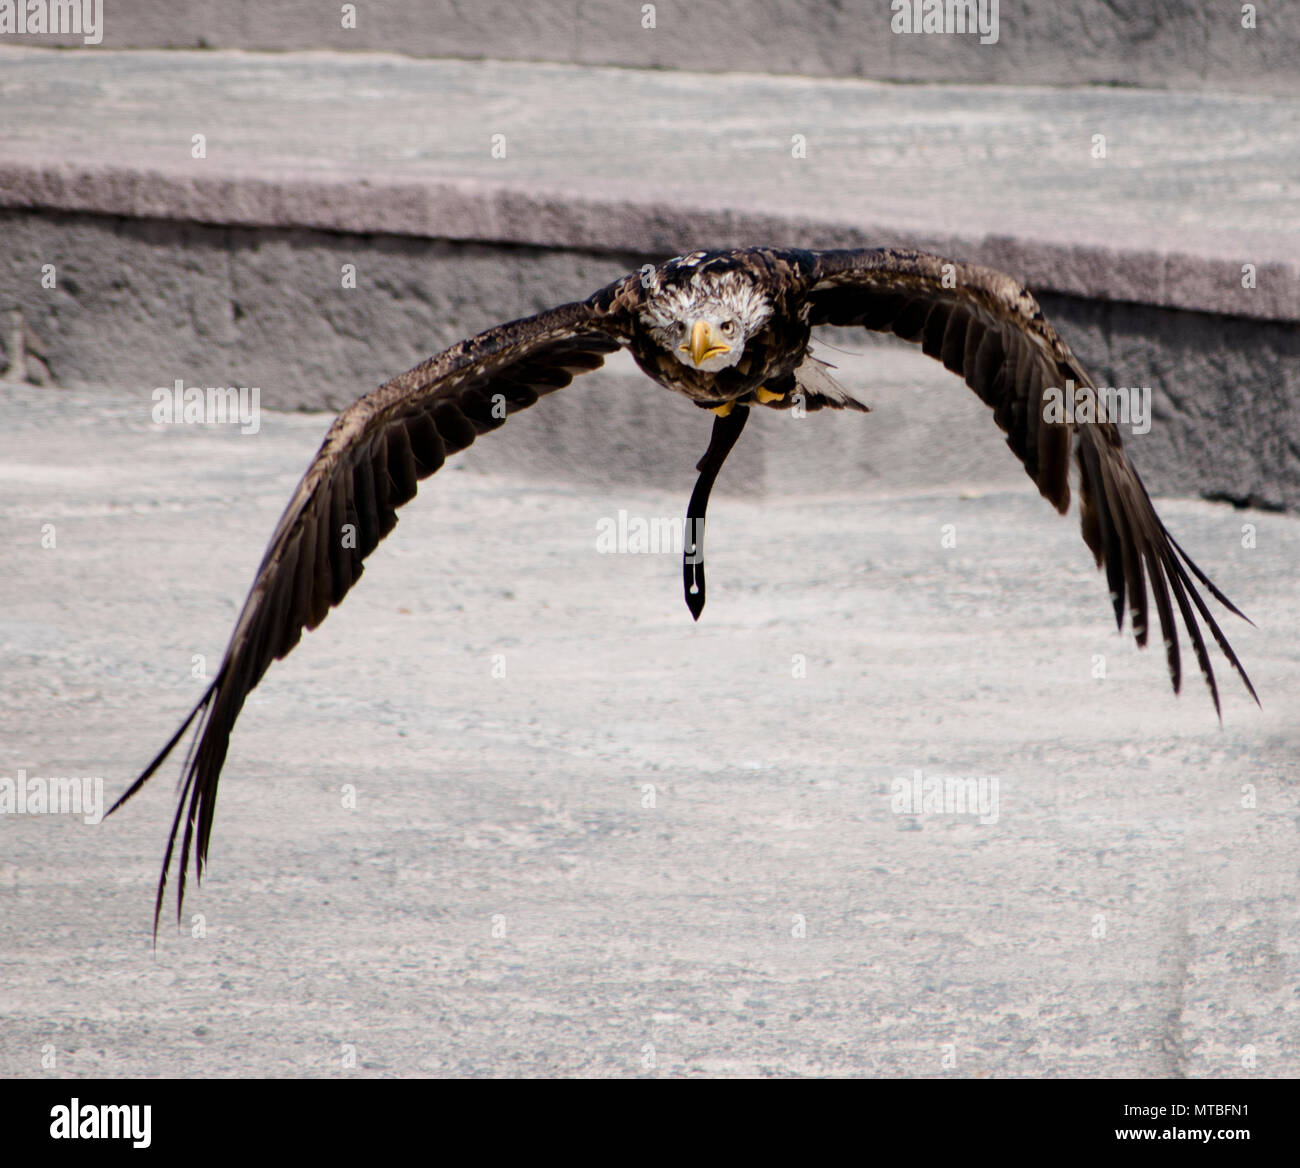 Aguila en pleno vuelo al acecho de su presa Stock Photo